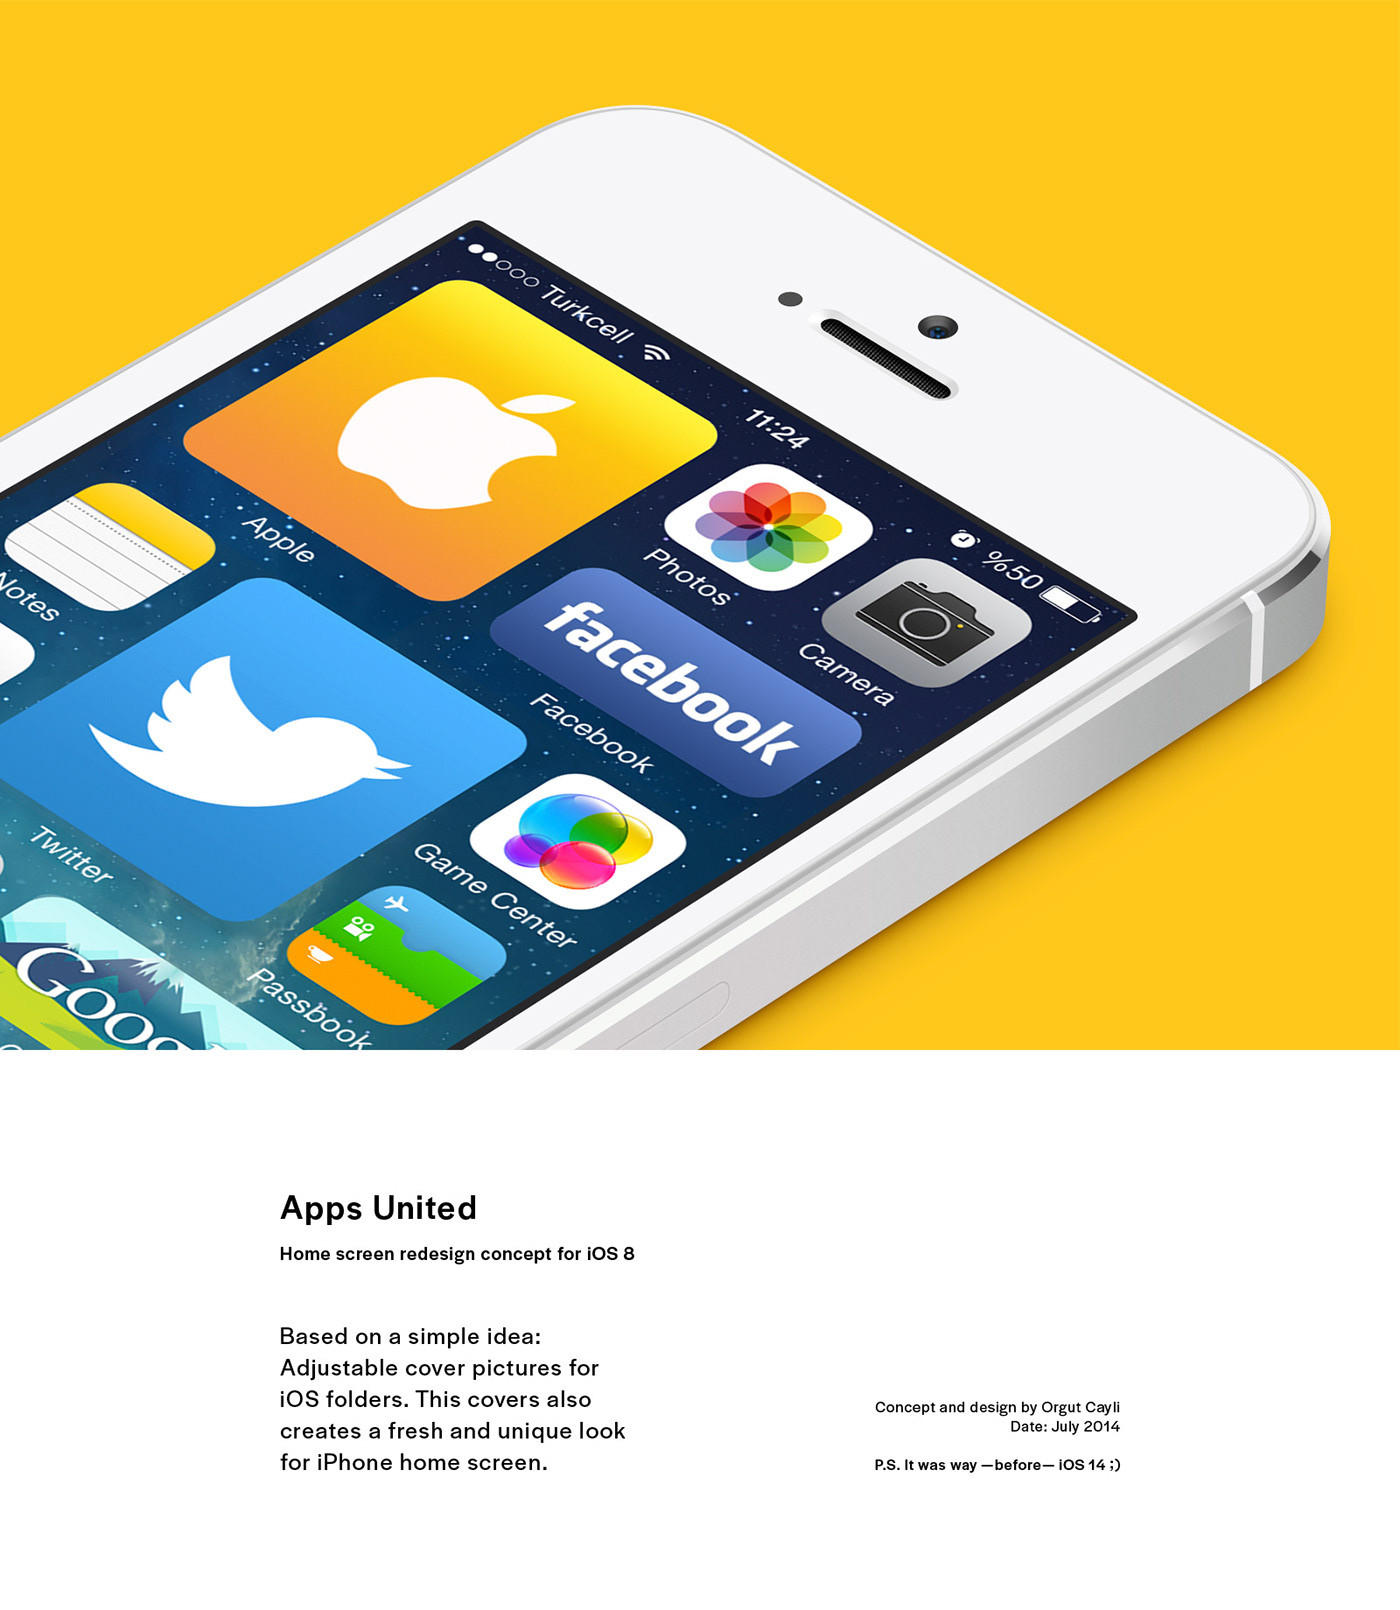 Adobe Portfolio apple ios 8 iphone Apps United UI ux concept